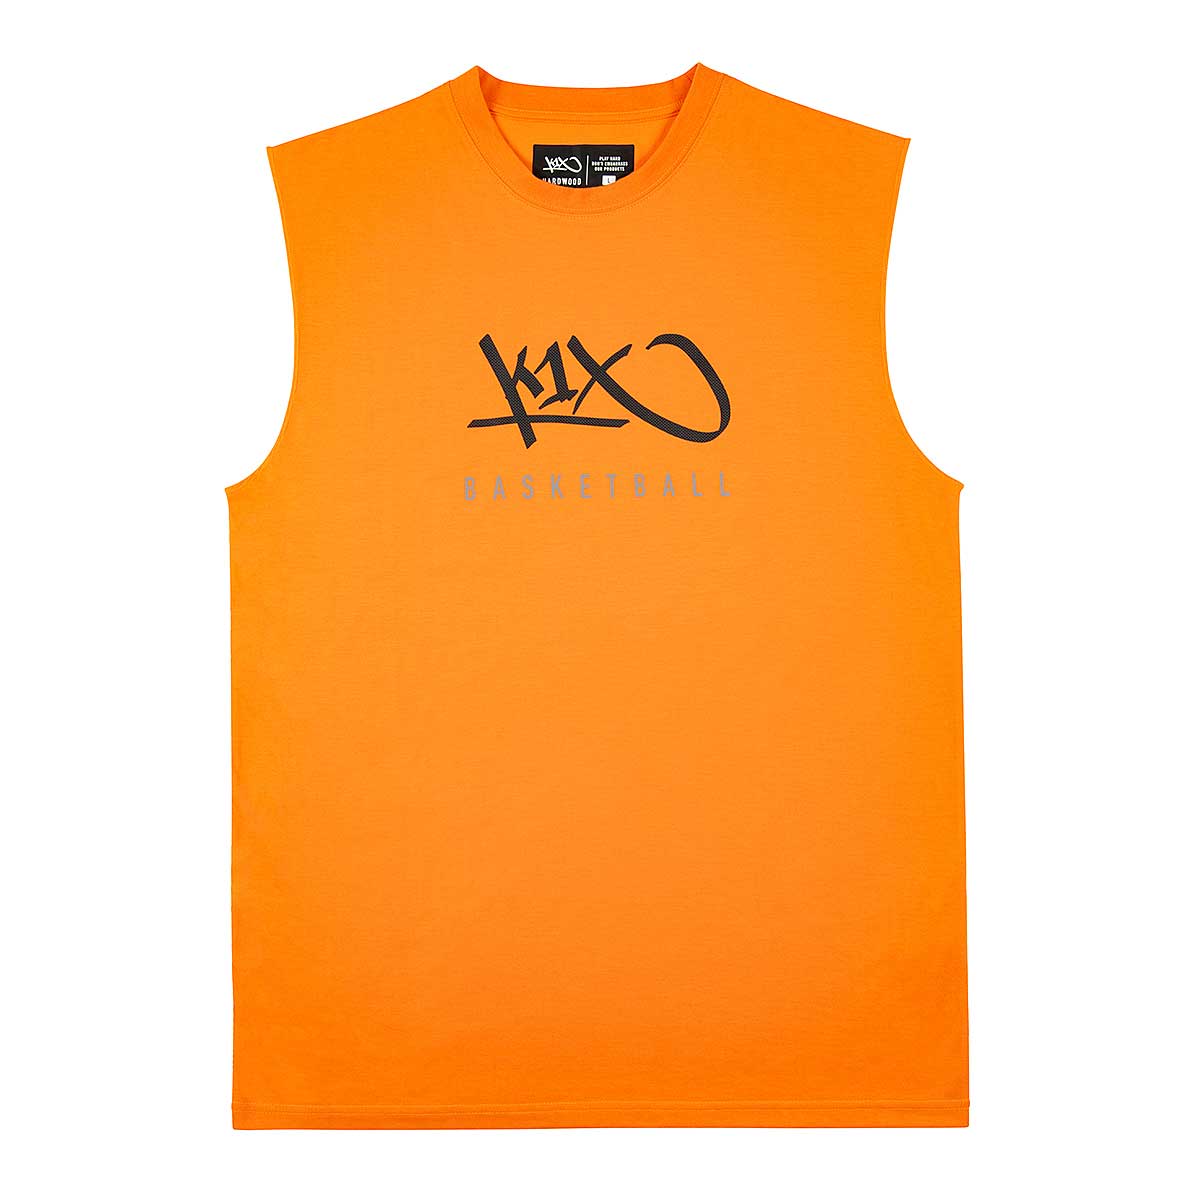 K1X Hardwood Sleeveless Shirt, Orange